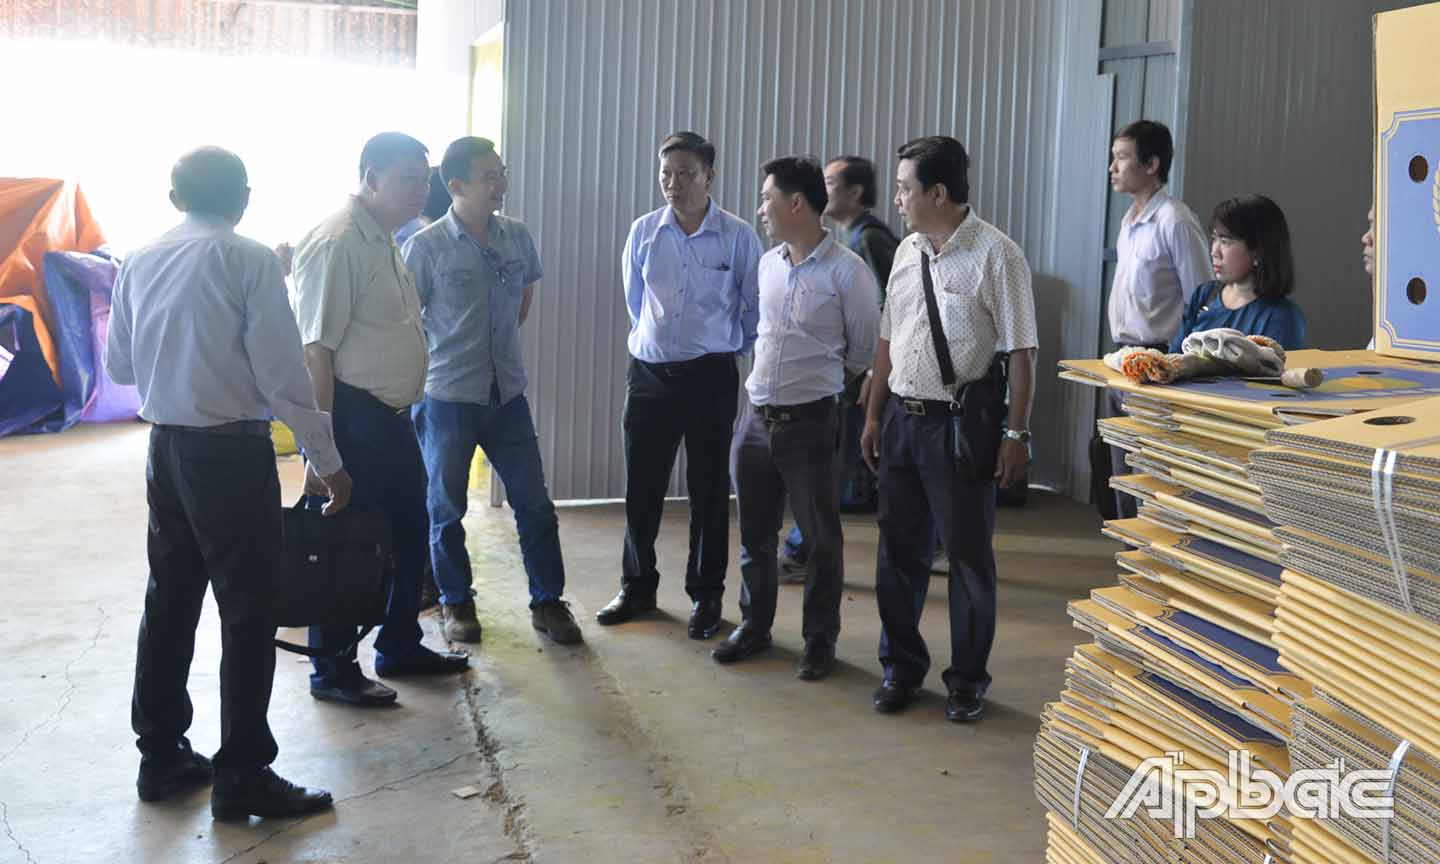 Đoàn đến khảo sát việc sử dụng bao bị đóng gói tại HTX Dịch vụ Nông nghiệp Hội Xuân.